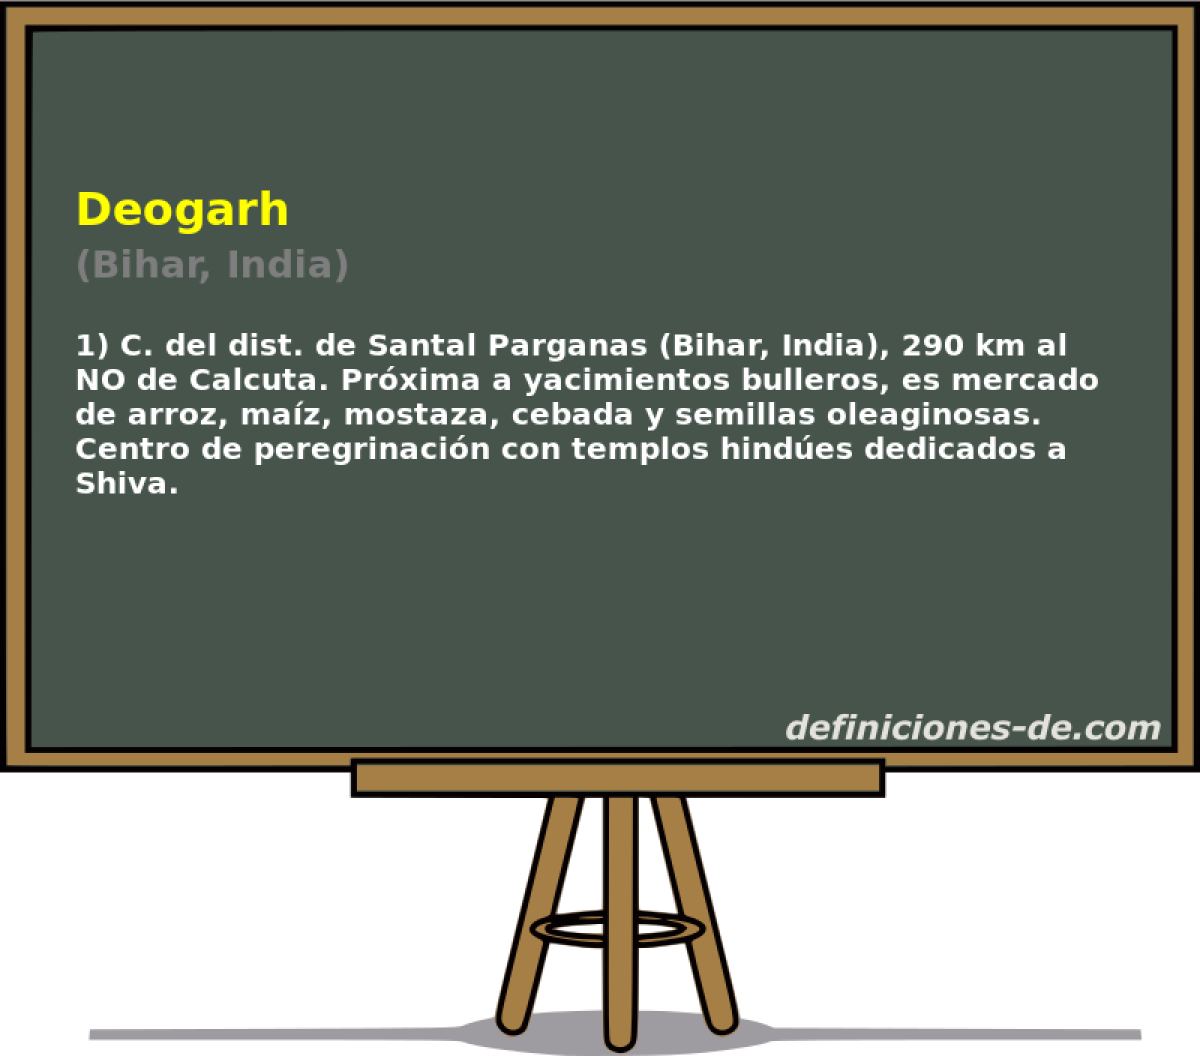 Deogarh (Bihar, India)